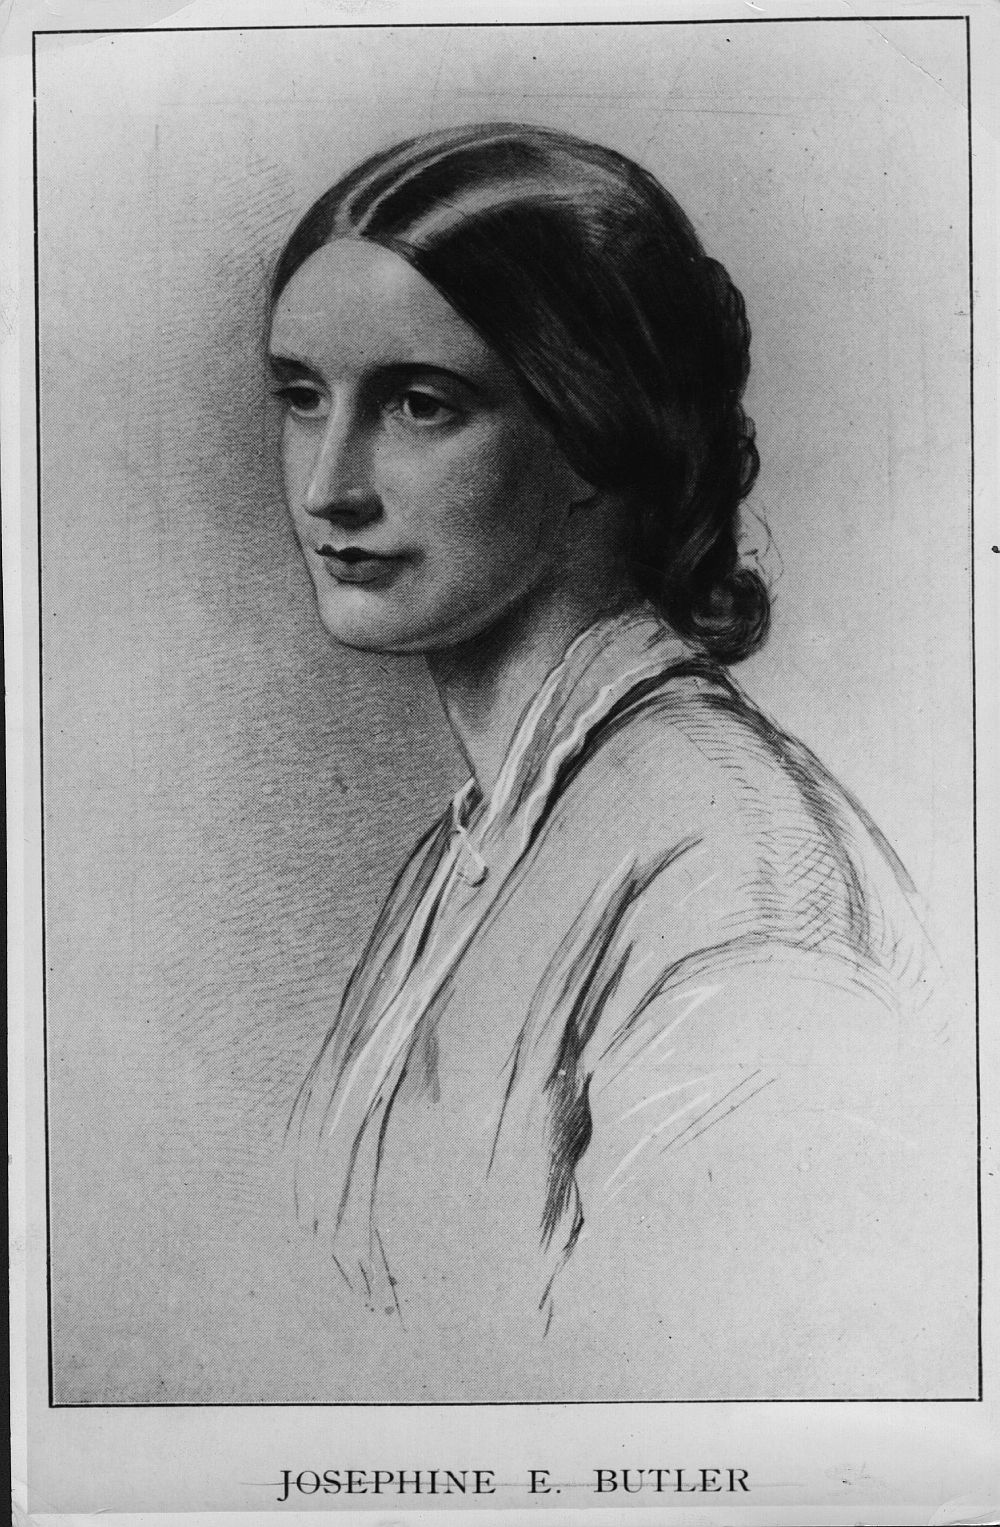 <strong>18. Джозефин Бътлър (1828 г. - 1906 г.) </strong><br>
<br>
Джозефин Бътлър, среща се и като Жозефина Бътлър, е британска феминистка и социална реформаторка от Викторианската епоха, станала известна преди всичко със загрижеността си за благополучието на проститутките.